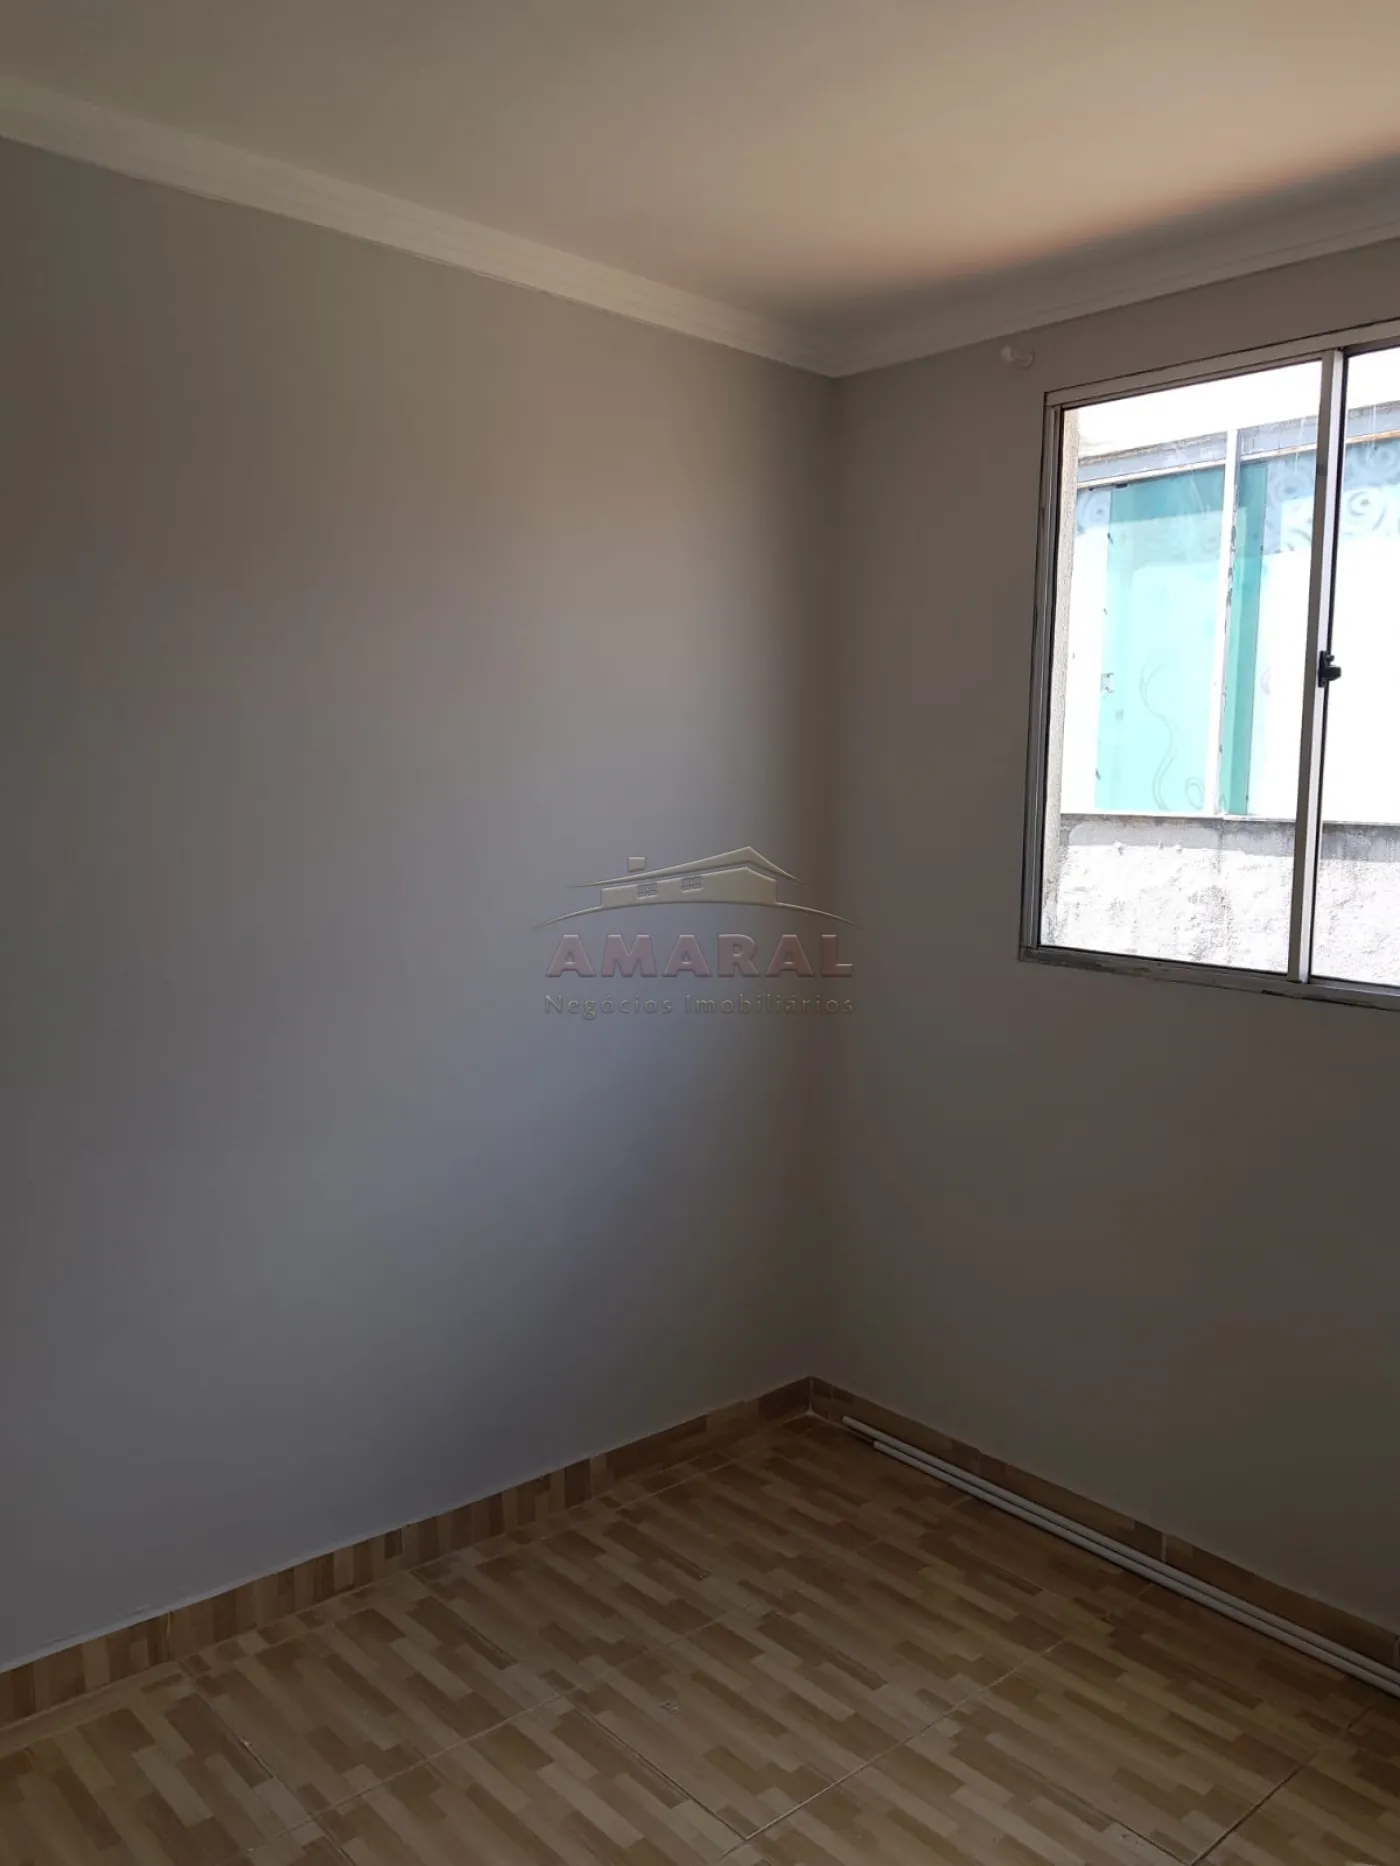 Comprar Casas / Condomínio em Ferraz de Vasconcelos R$ 210.000,00 - Foto 9